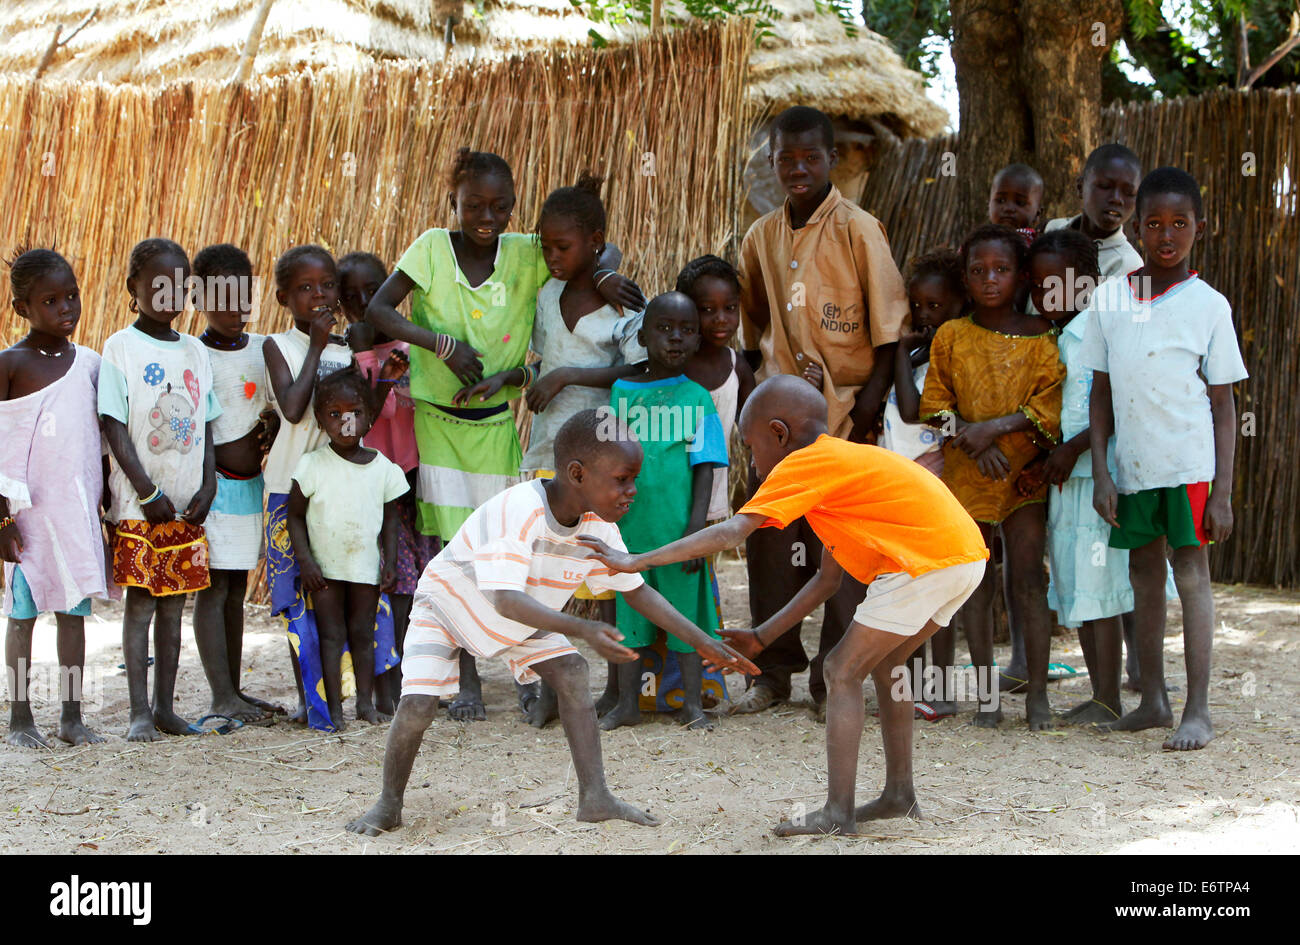 Les enfants effectuer un match de lutte. La lutte est le sport national. Sénégal, Afrique Banque D'Images